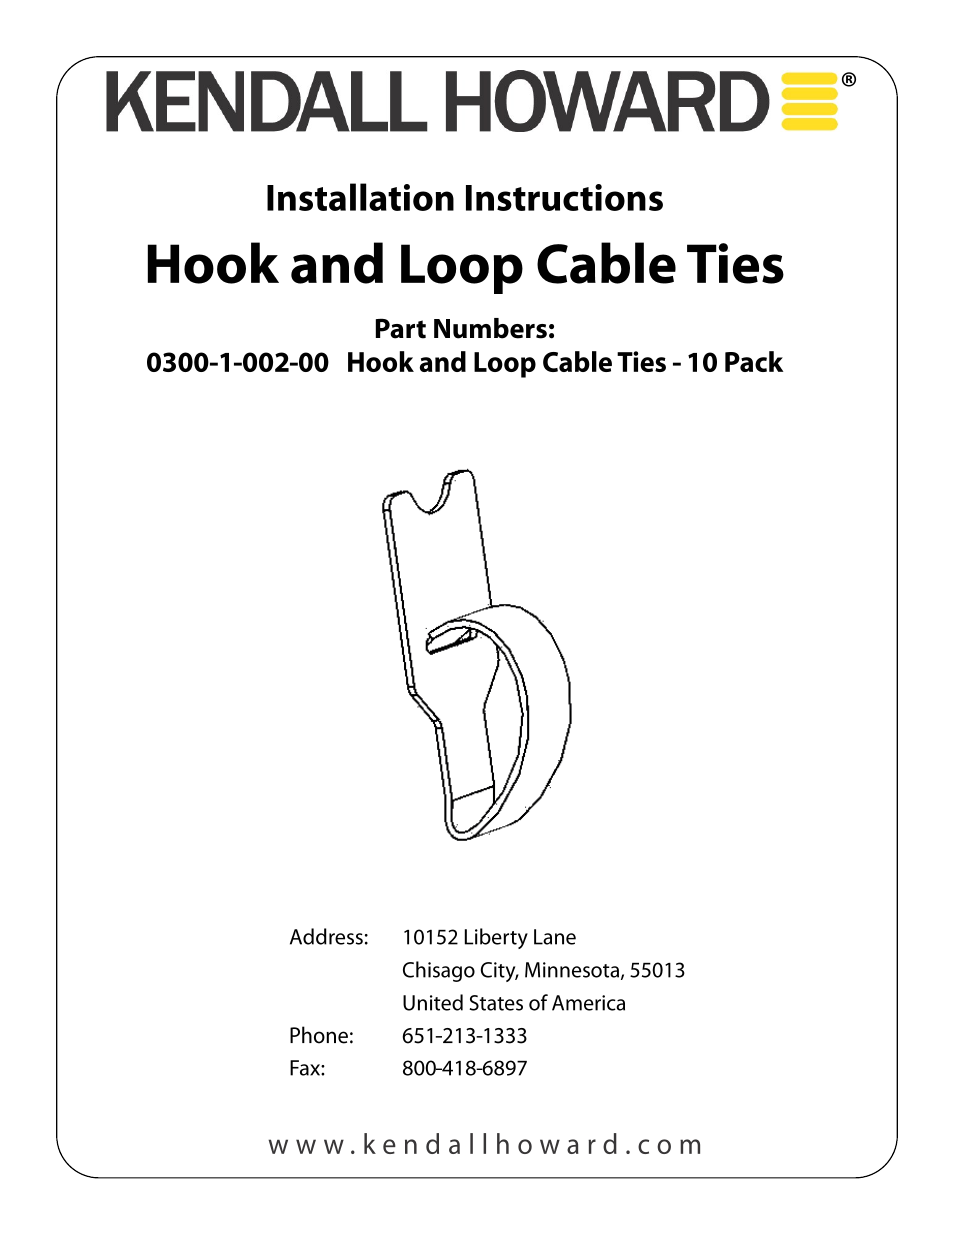 0300-1-002-00 Hook and Loop Cable Ties - 10 pack